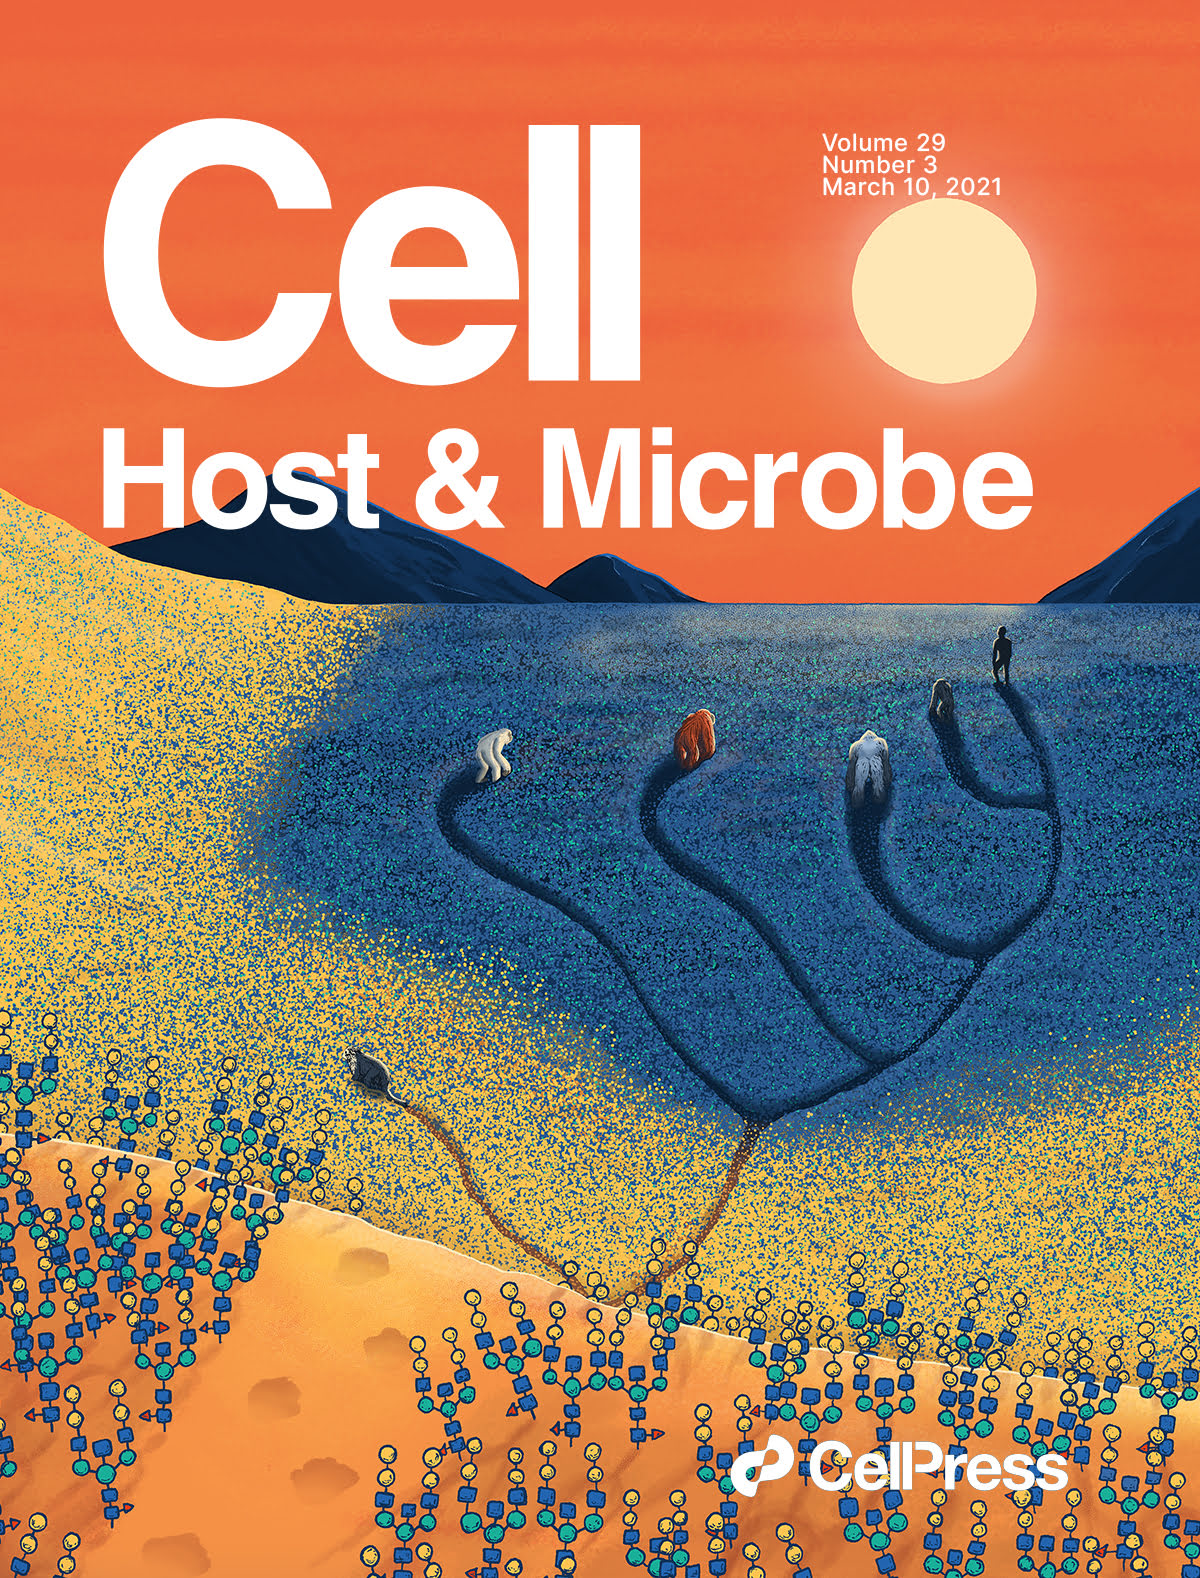 An illustrated cover for "Cell Host & Microbe". A capa mostra primatas a viajar através de um campo em direcção às montanhas ao longe. 